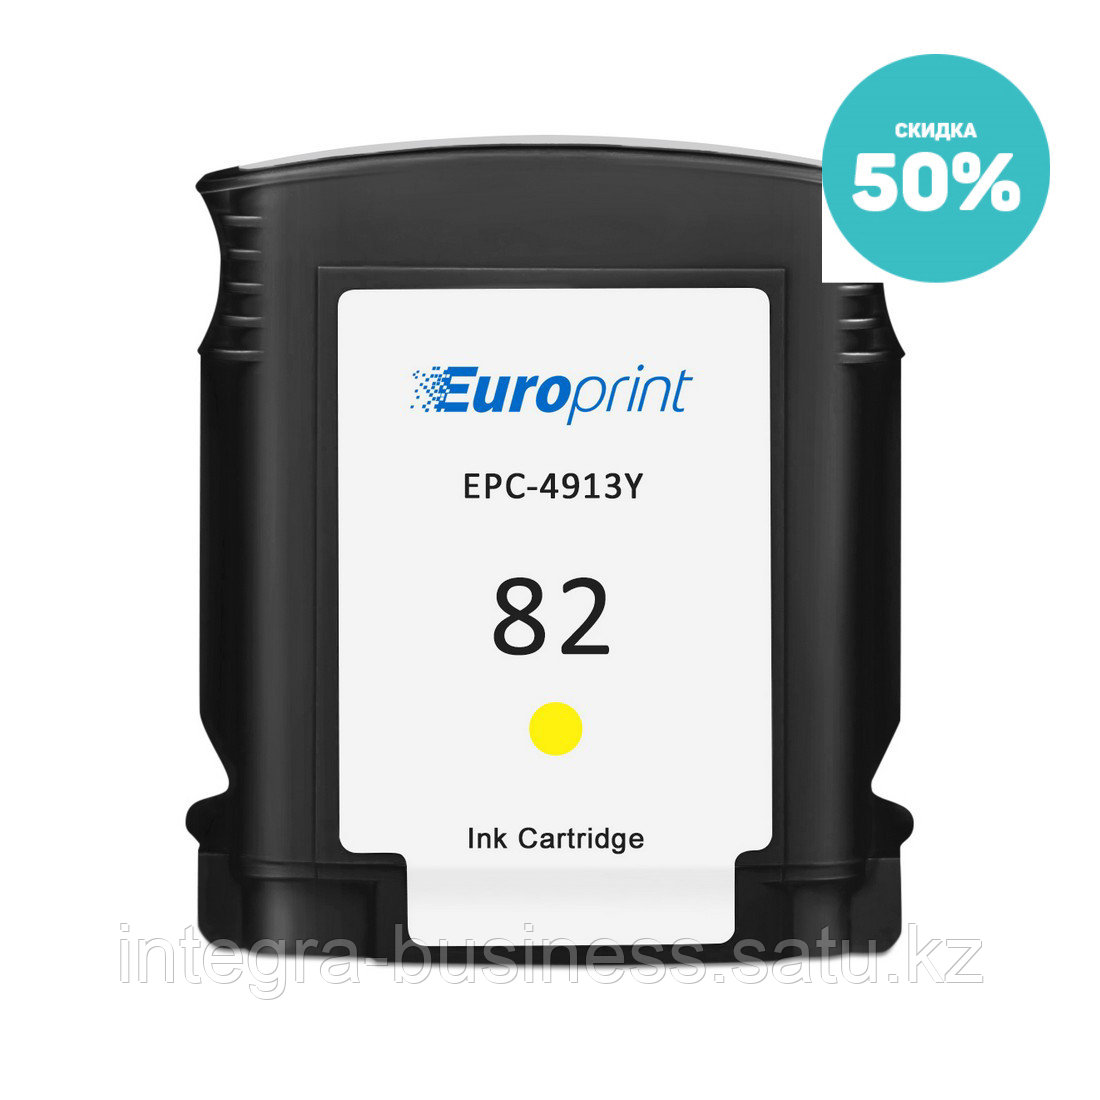 Картридж Europrint EPC-4913Y (№82) - истек срок годности, фото 1